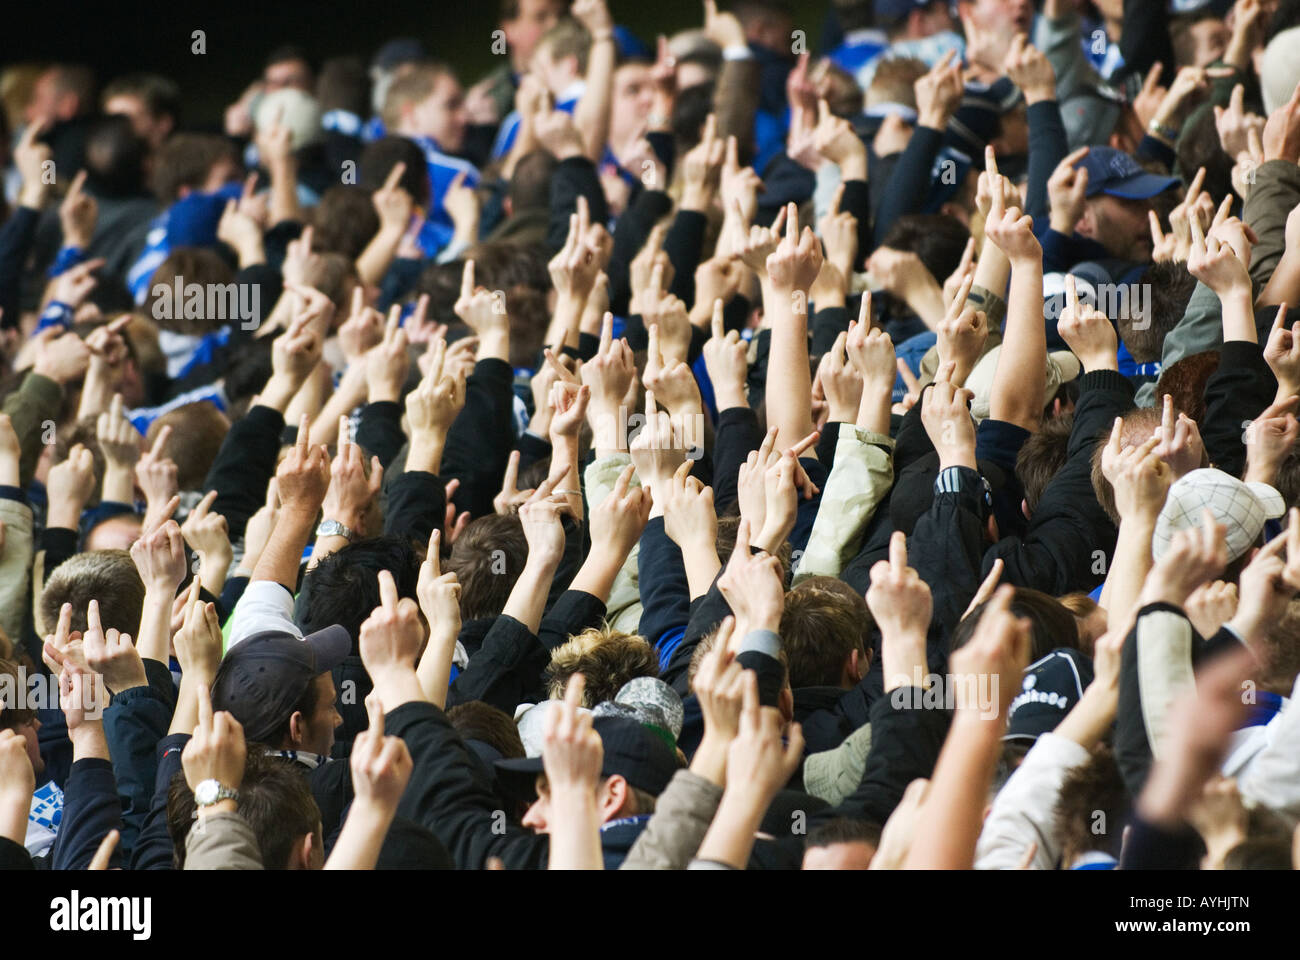 Los aficionados al fútbol de Schalke 04 muestran sus dedos outstreched al equipo contrario Foto de stock